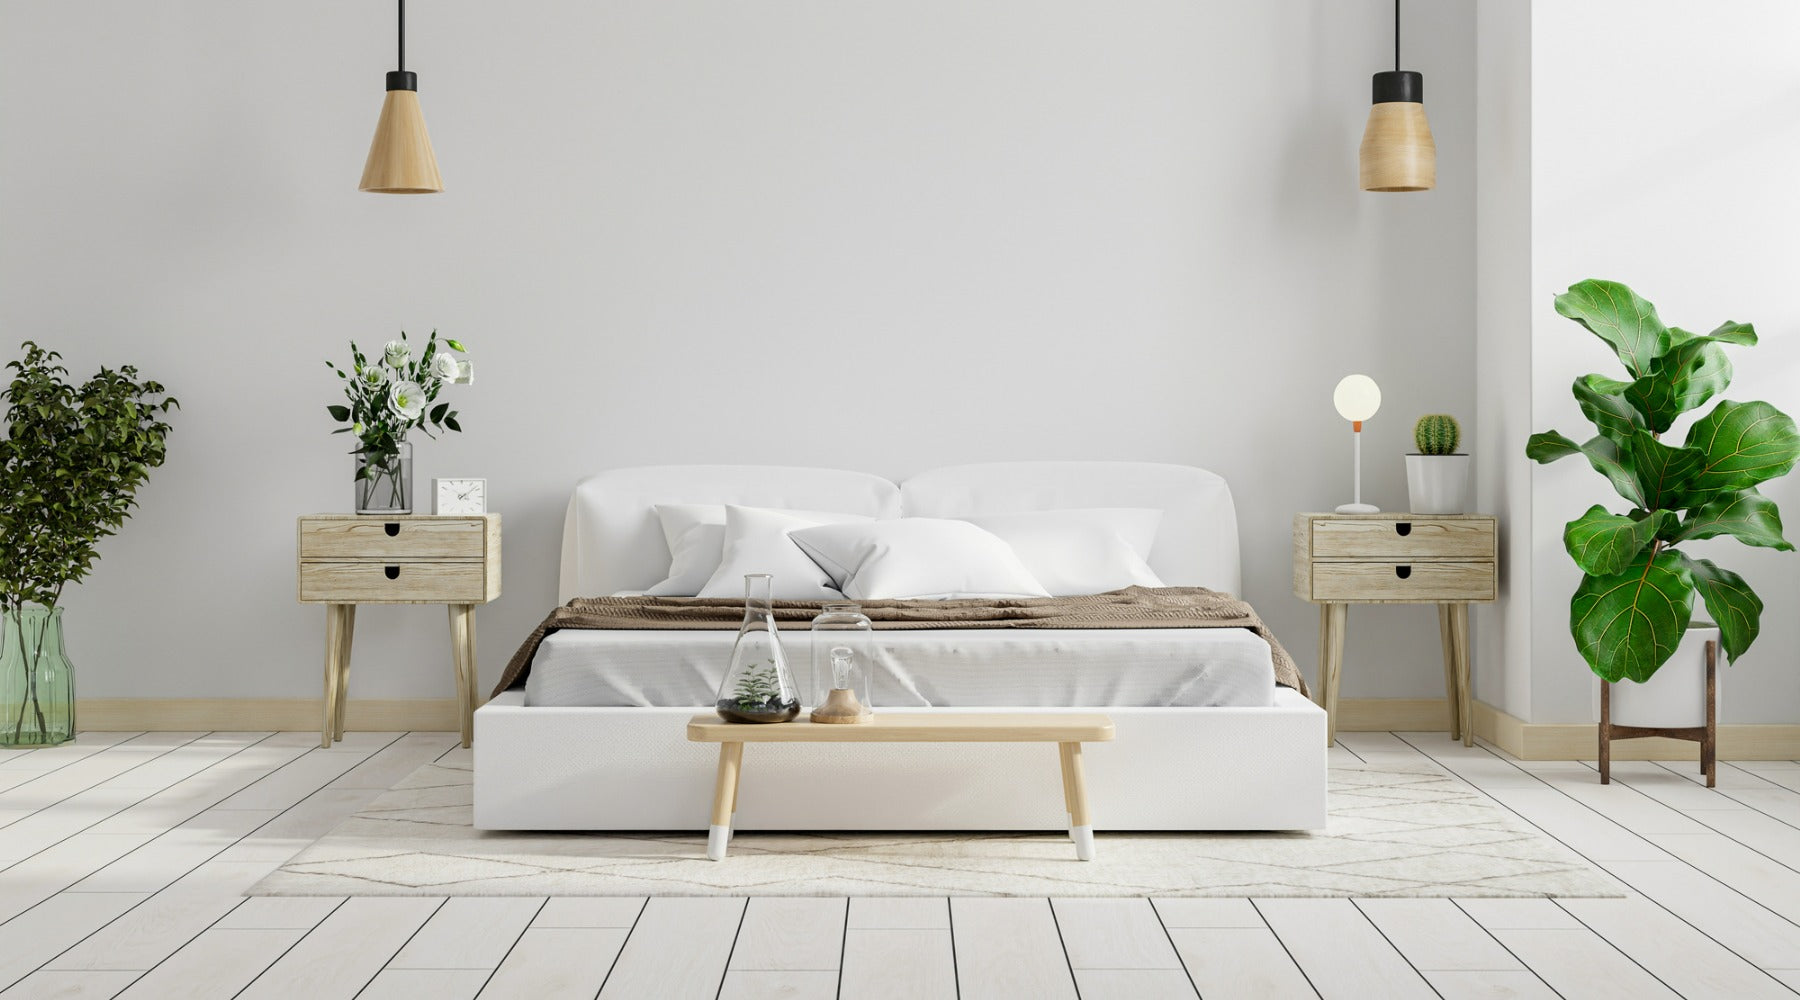 How Do I Make My Bedroom Look Scandinavian